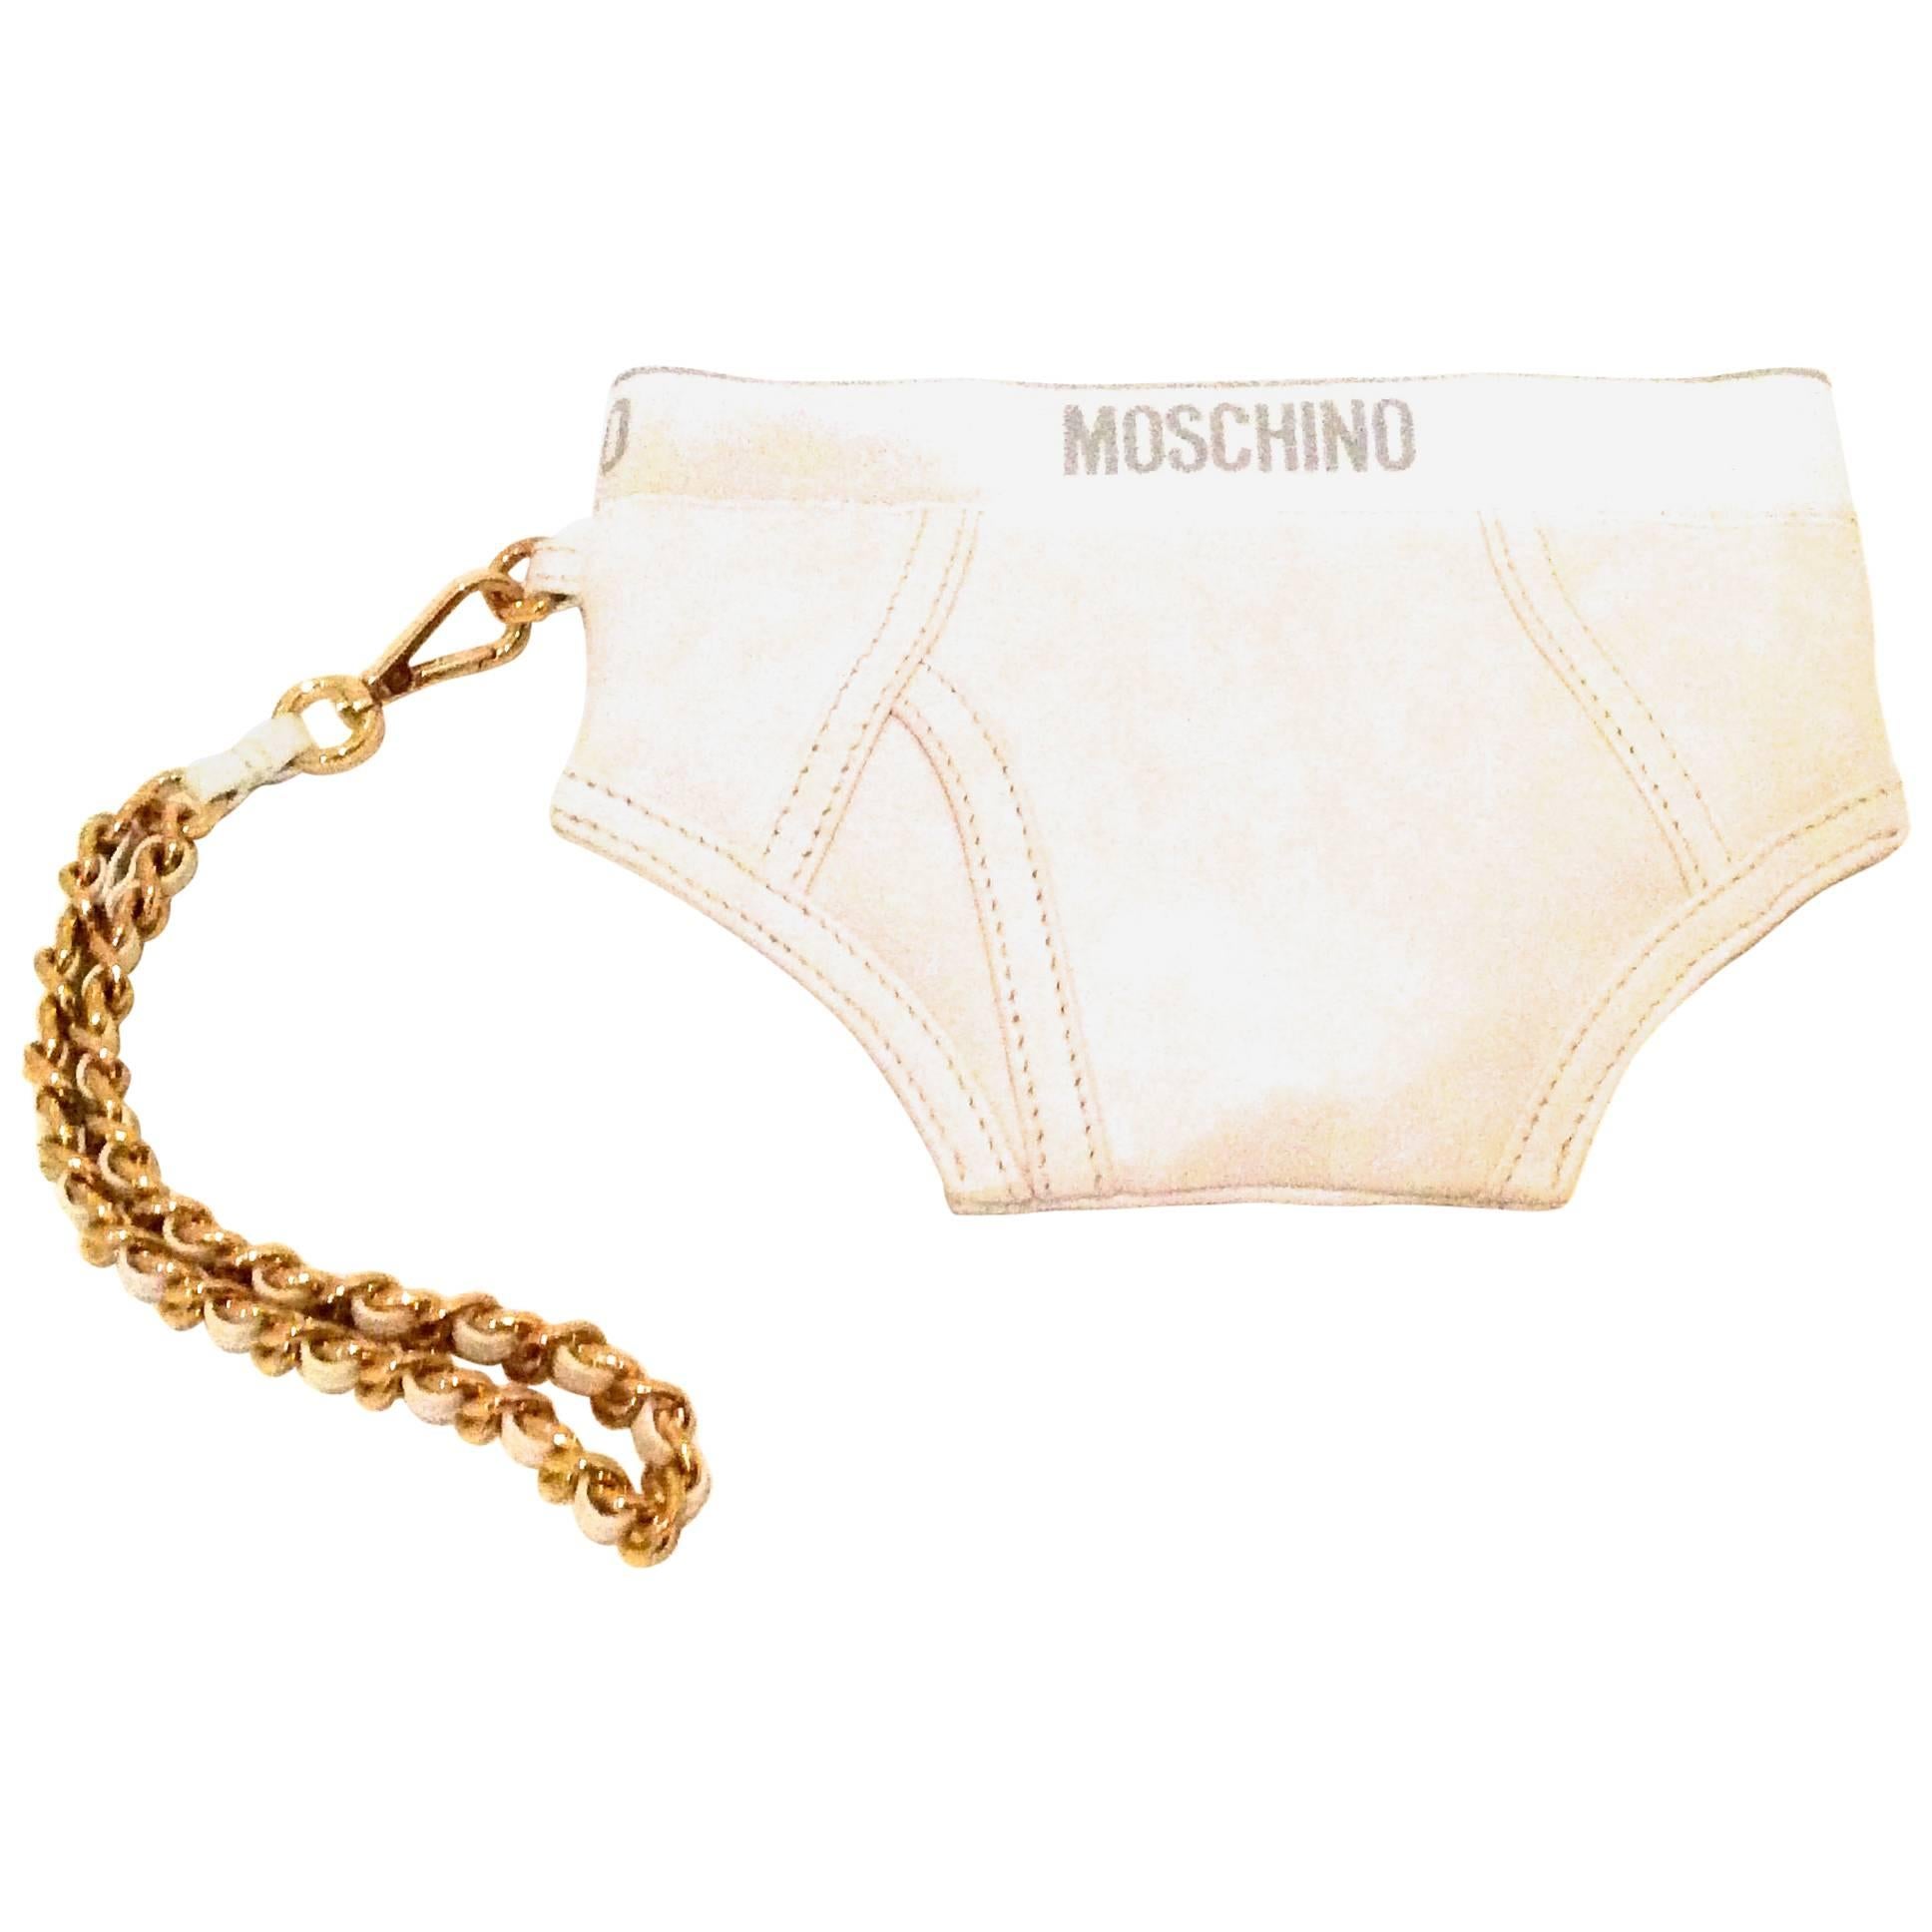 Moschino Underwear Bag For Sale